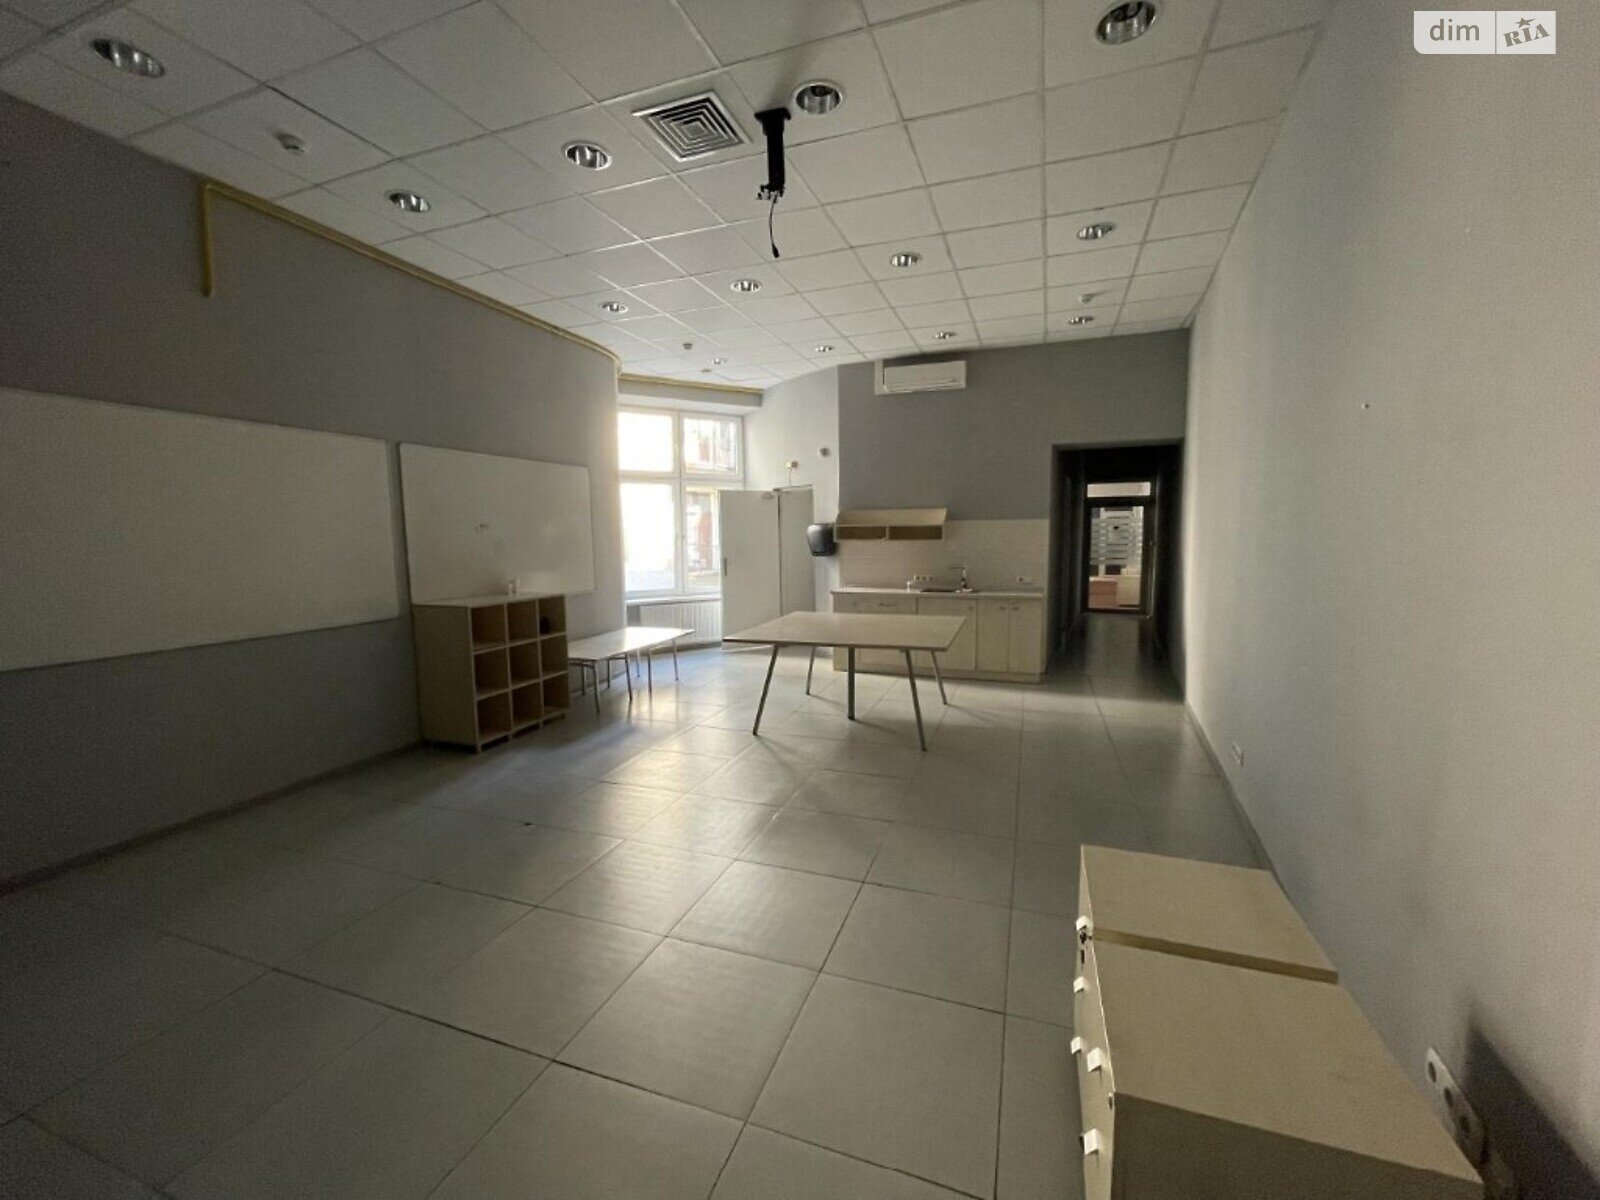 Аренда офисного помещения в Львове, Шевченко проспект 5, помещений -, этаж - 1 фото 1